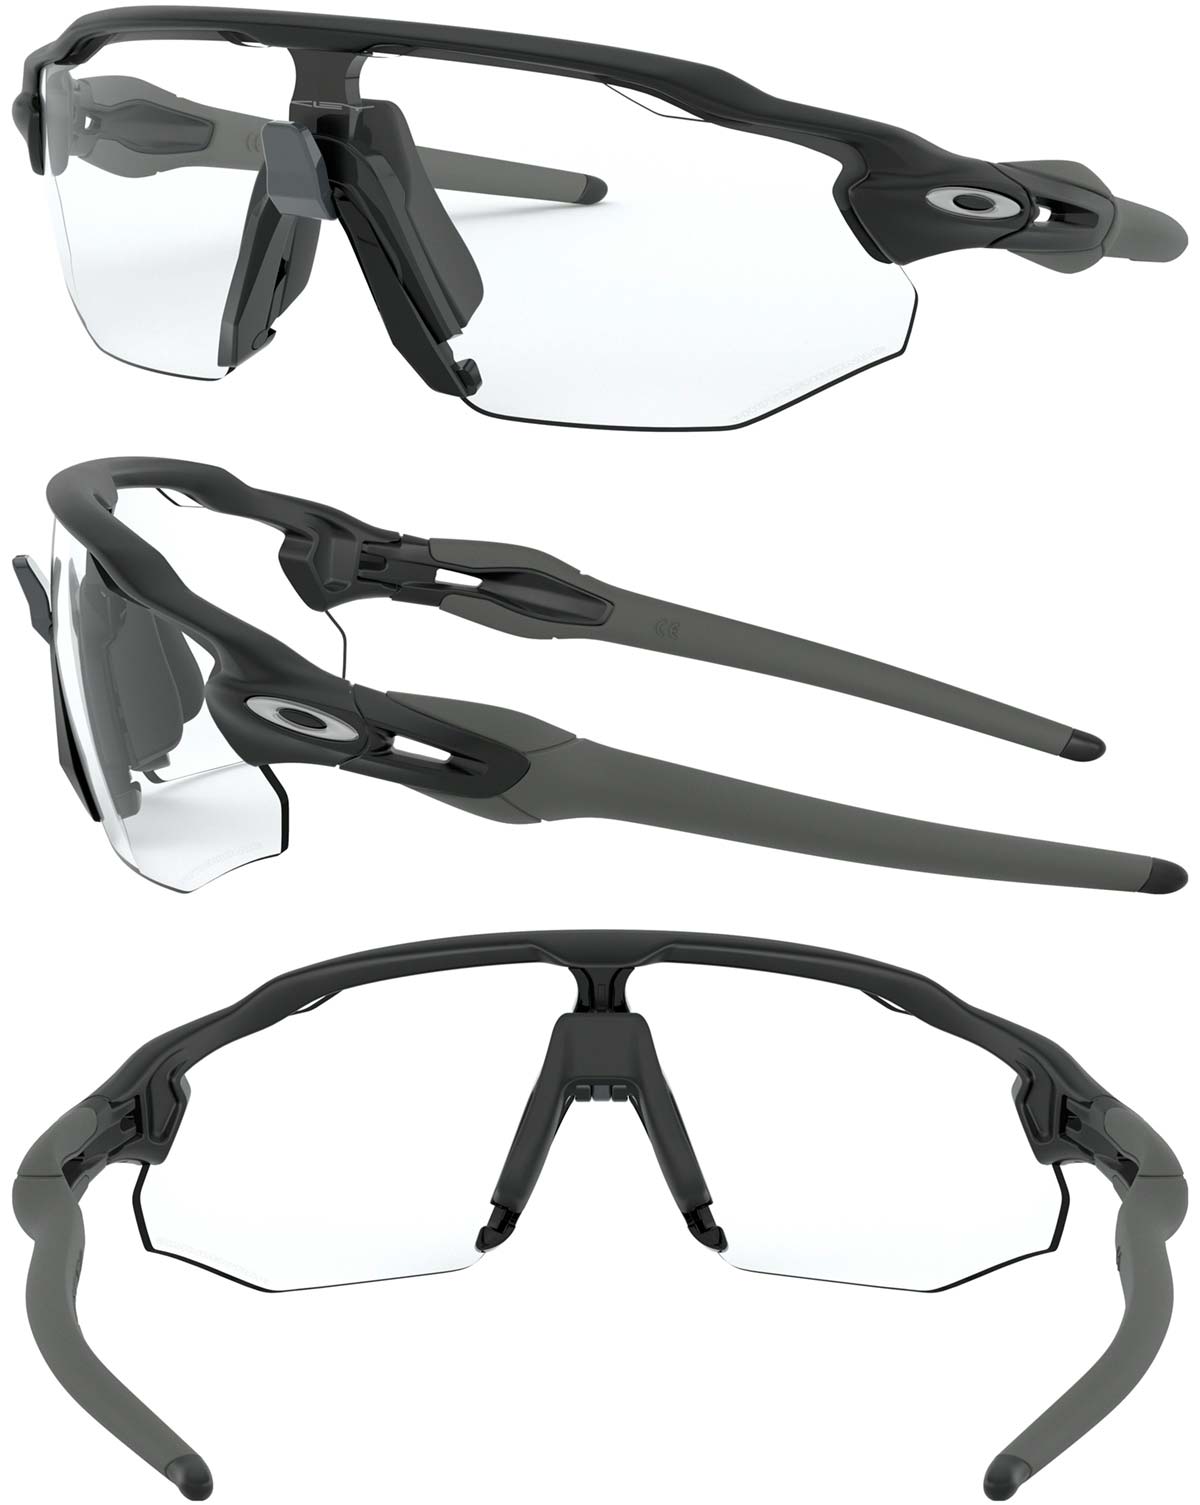 En TodoMountainBike: Oakley presenta las Radar EV Advancer, unas gafas con sistema antivaho integrado